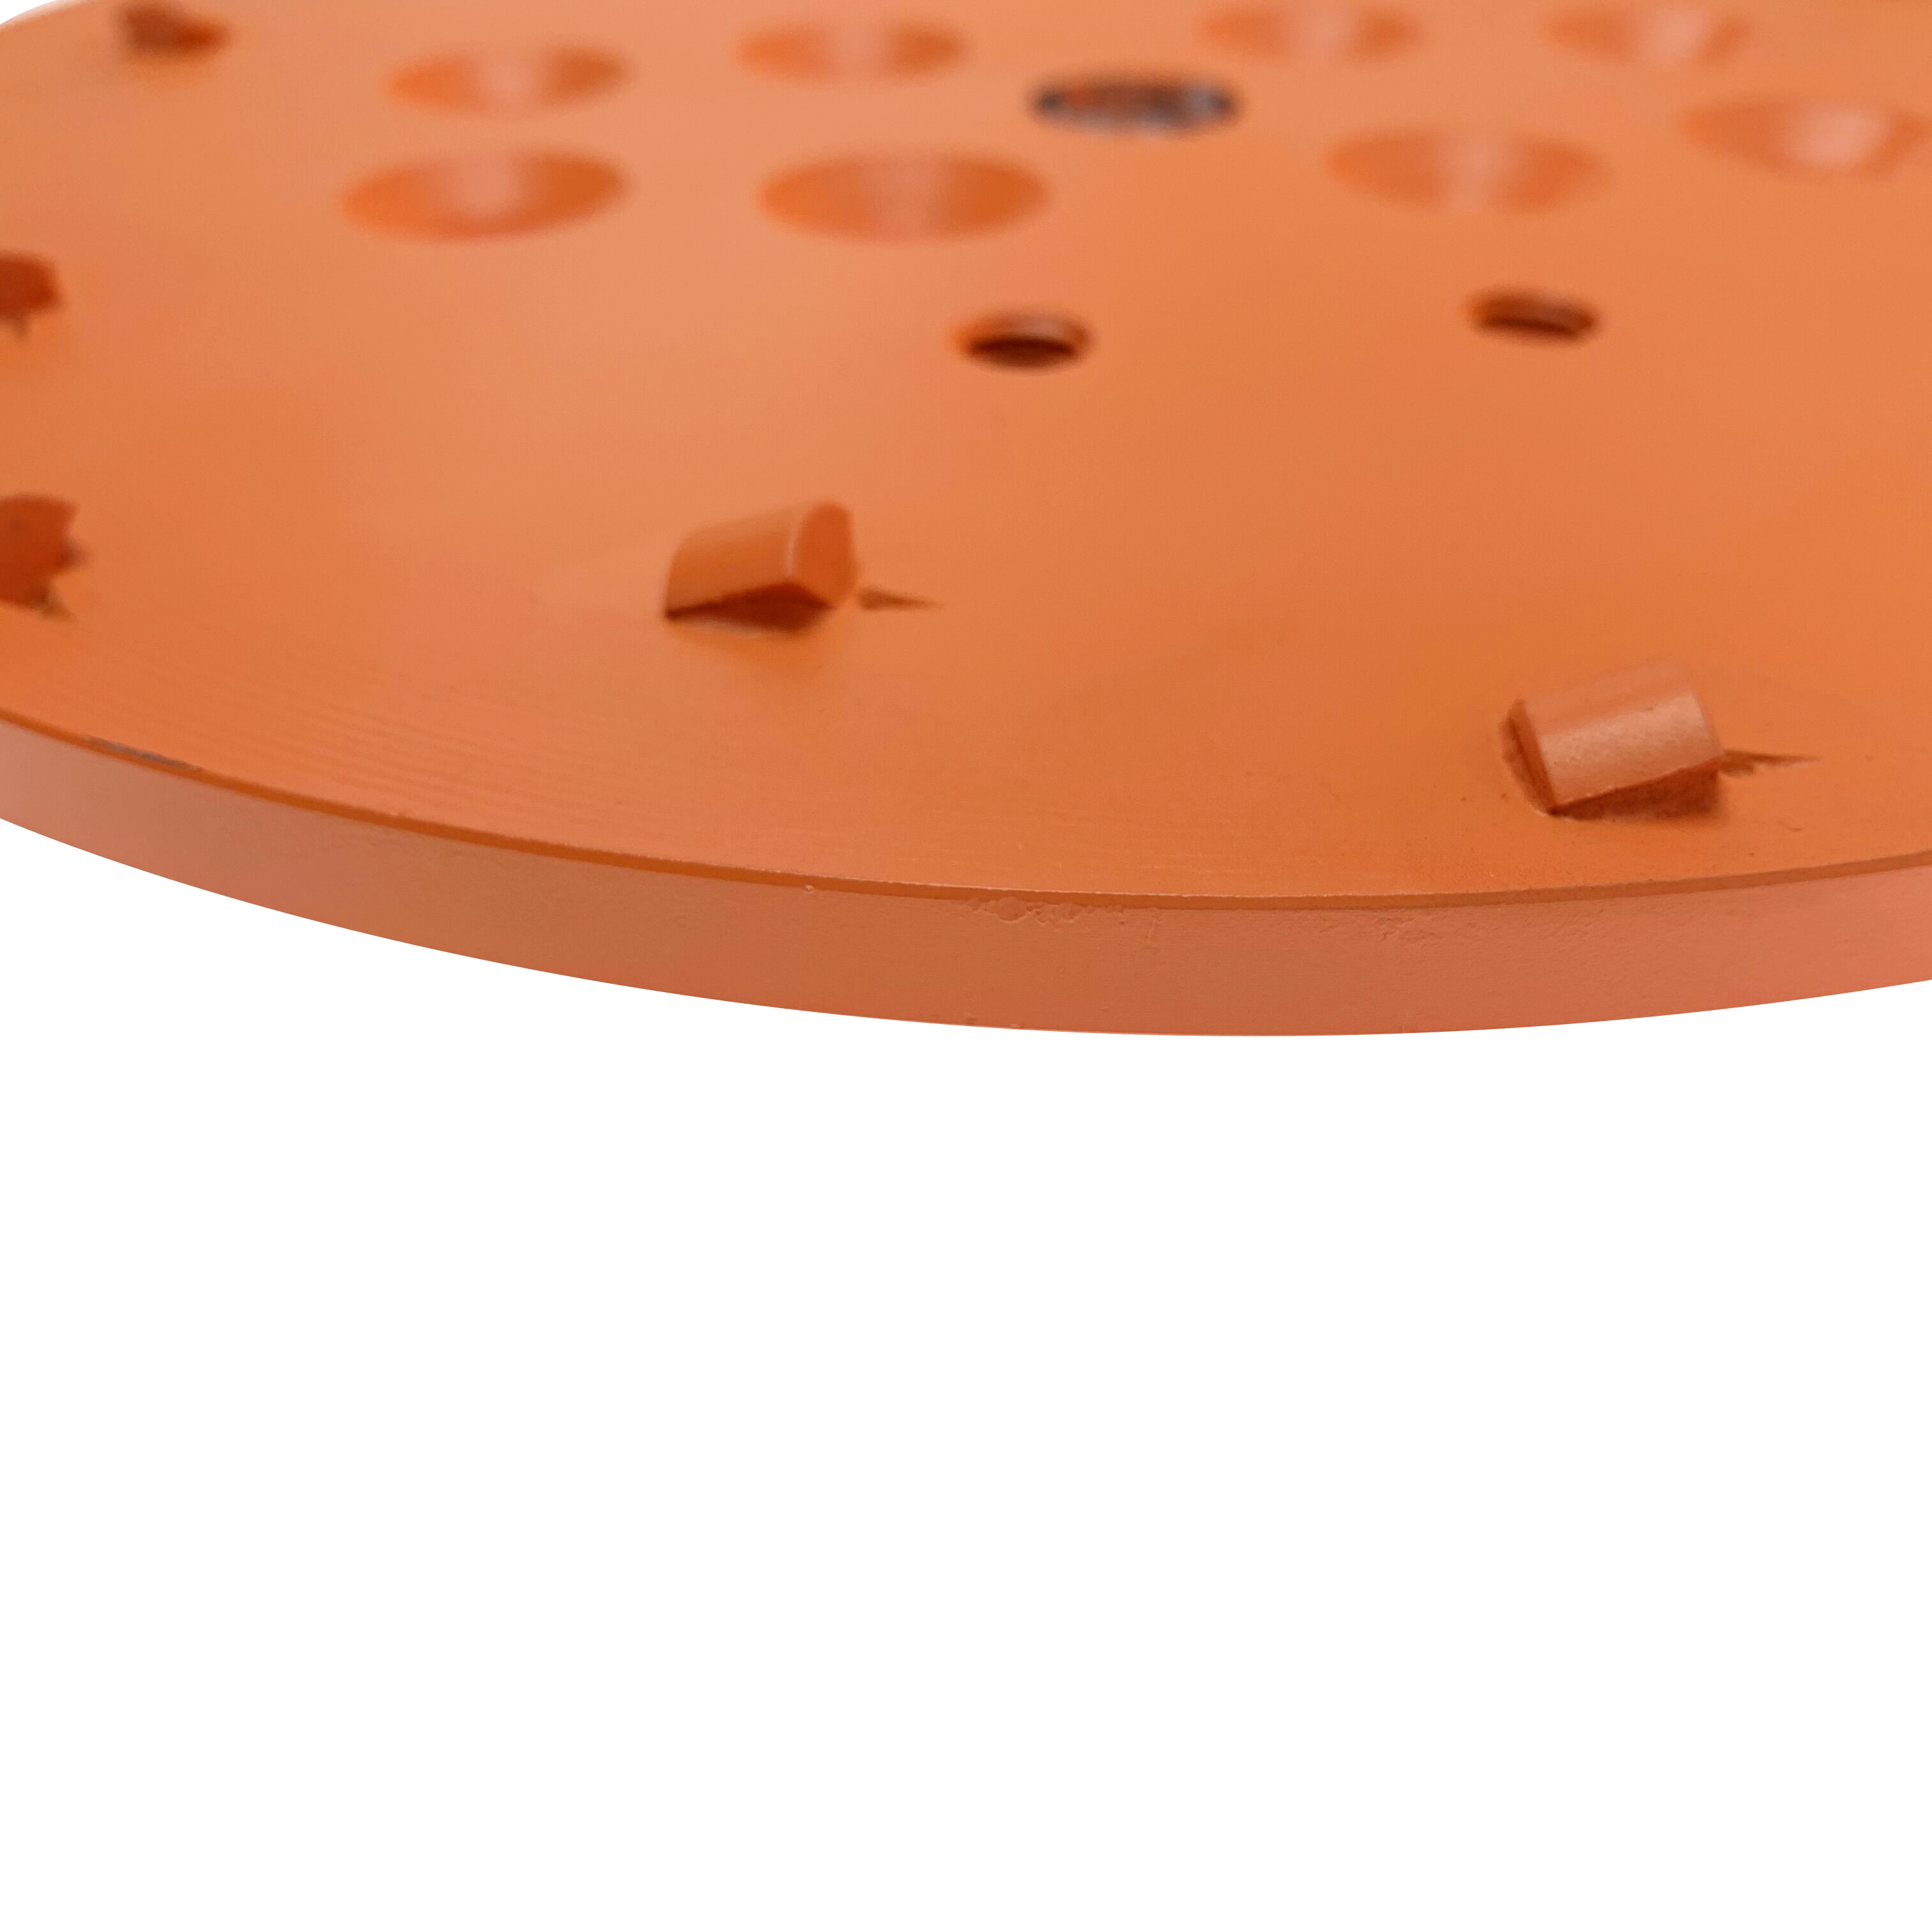 Паяный серебряный диск премиум-класса 10 дюймов, 250 мм, оранжевый алмазный шлифовальный диск для пола PCD